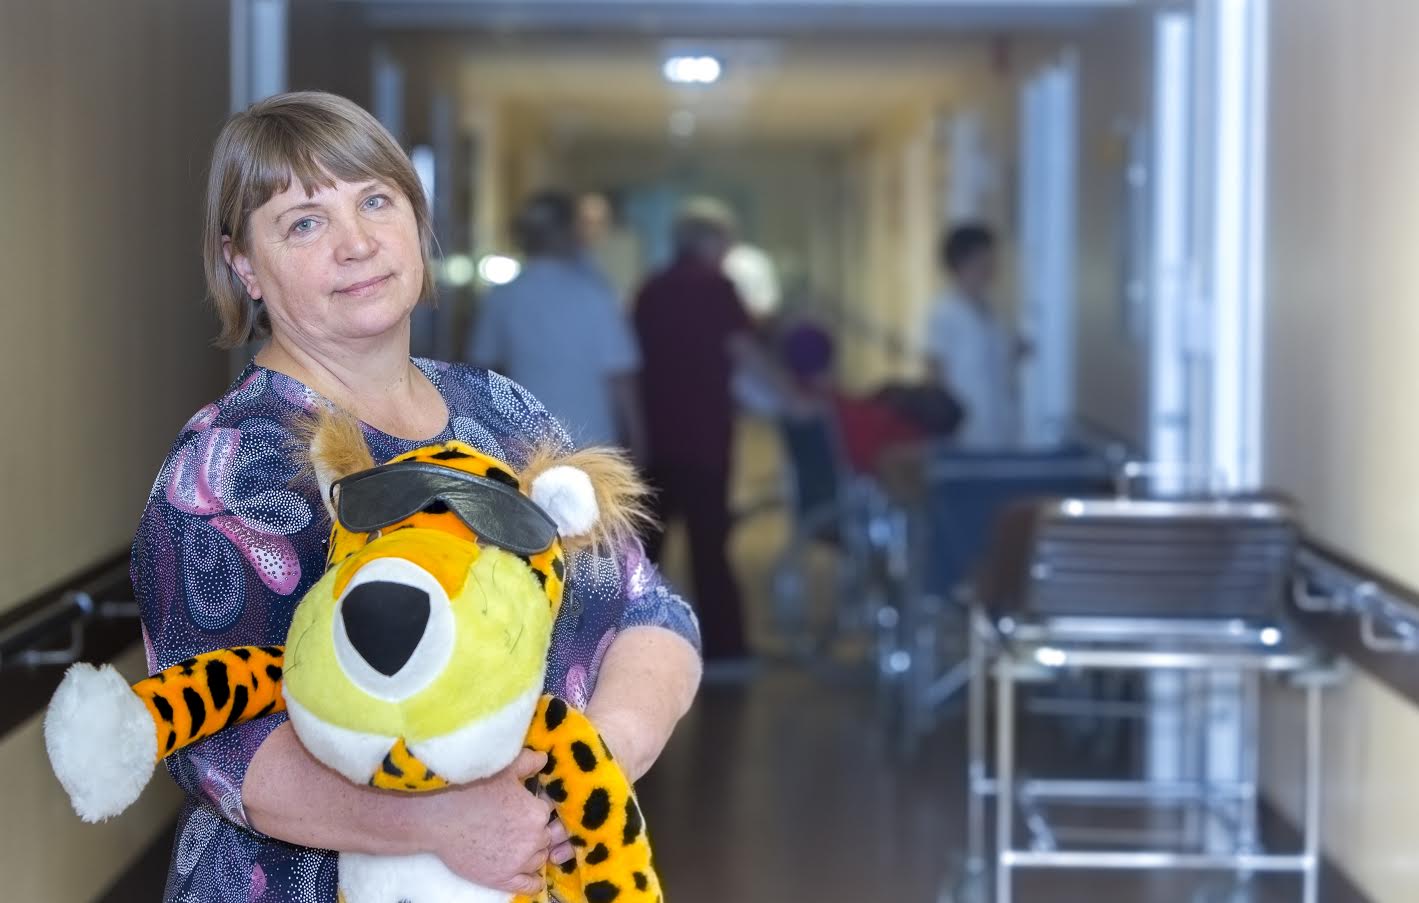 Lõuna-Eesti haigla ravijuht Agnes Aart julgustab Põlva lapseootel naisi Võrru sünnitama tulema ja usub, et vahemaa haiglani jääb mõistlikkuse piiresse. Foto: AIGAR NAGEL